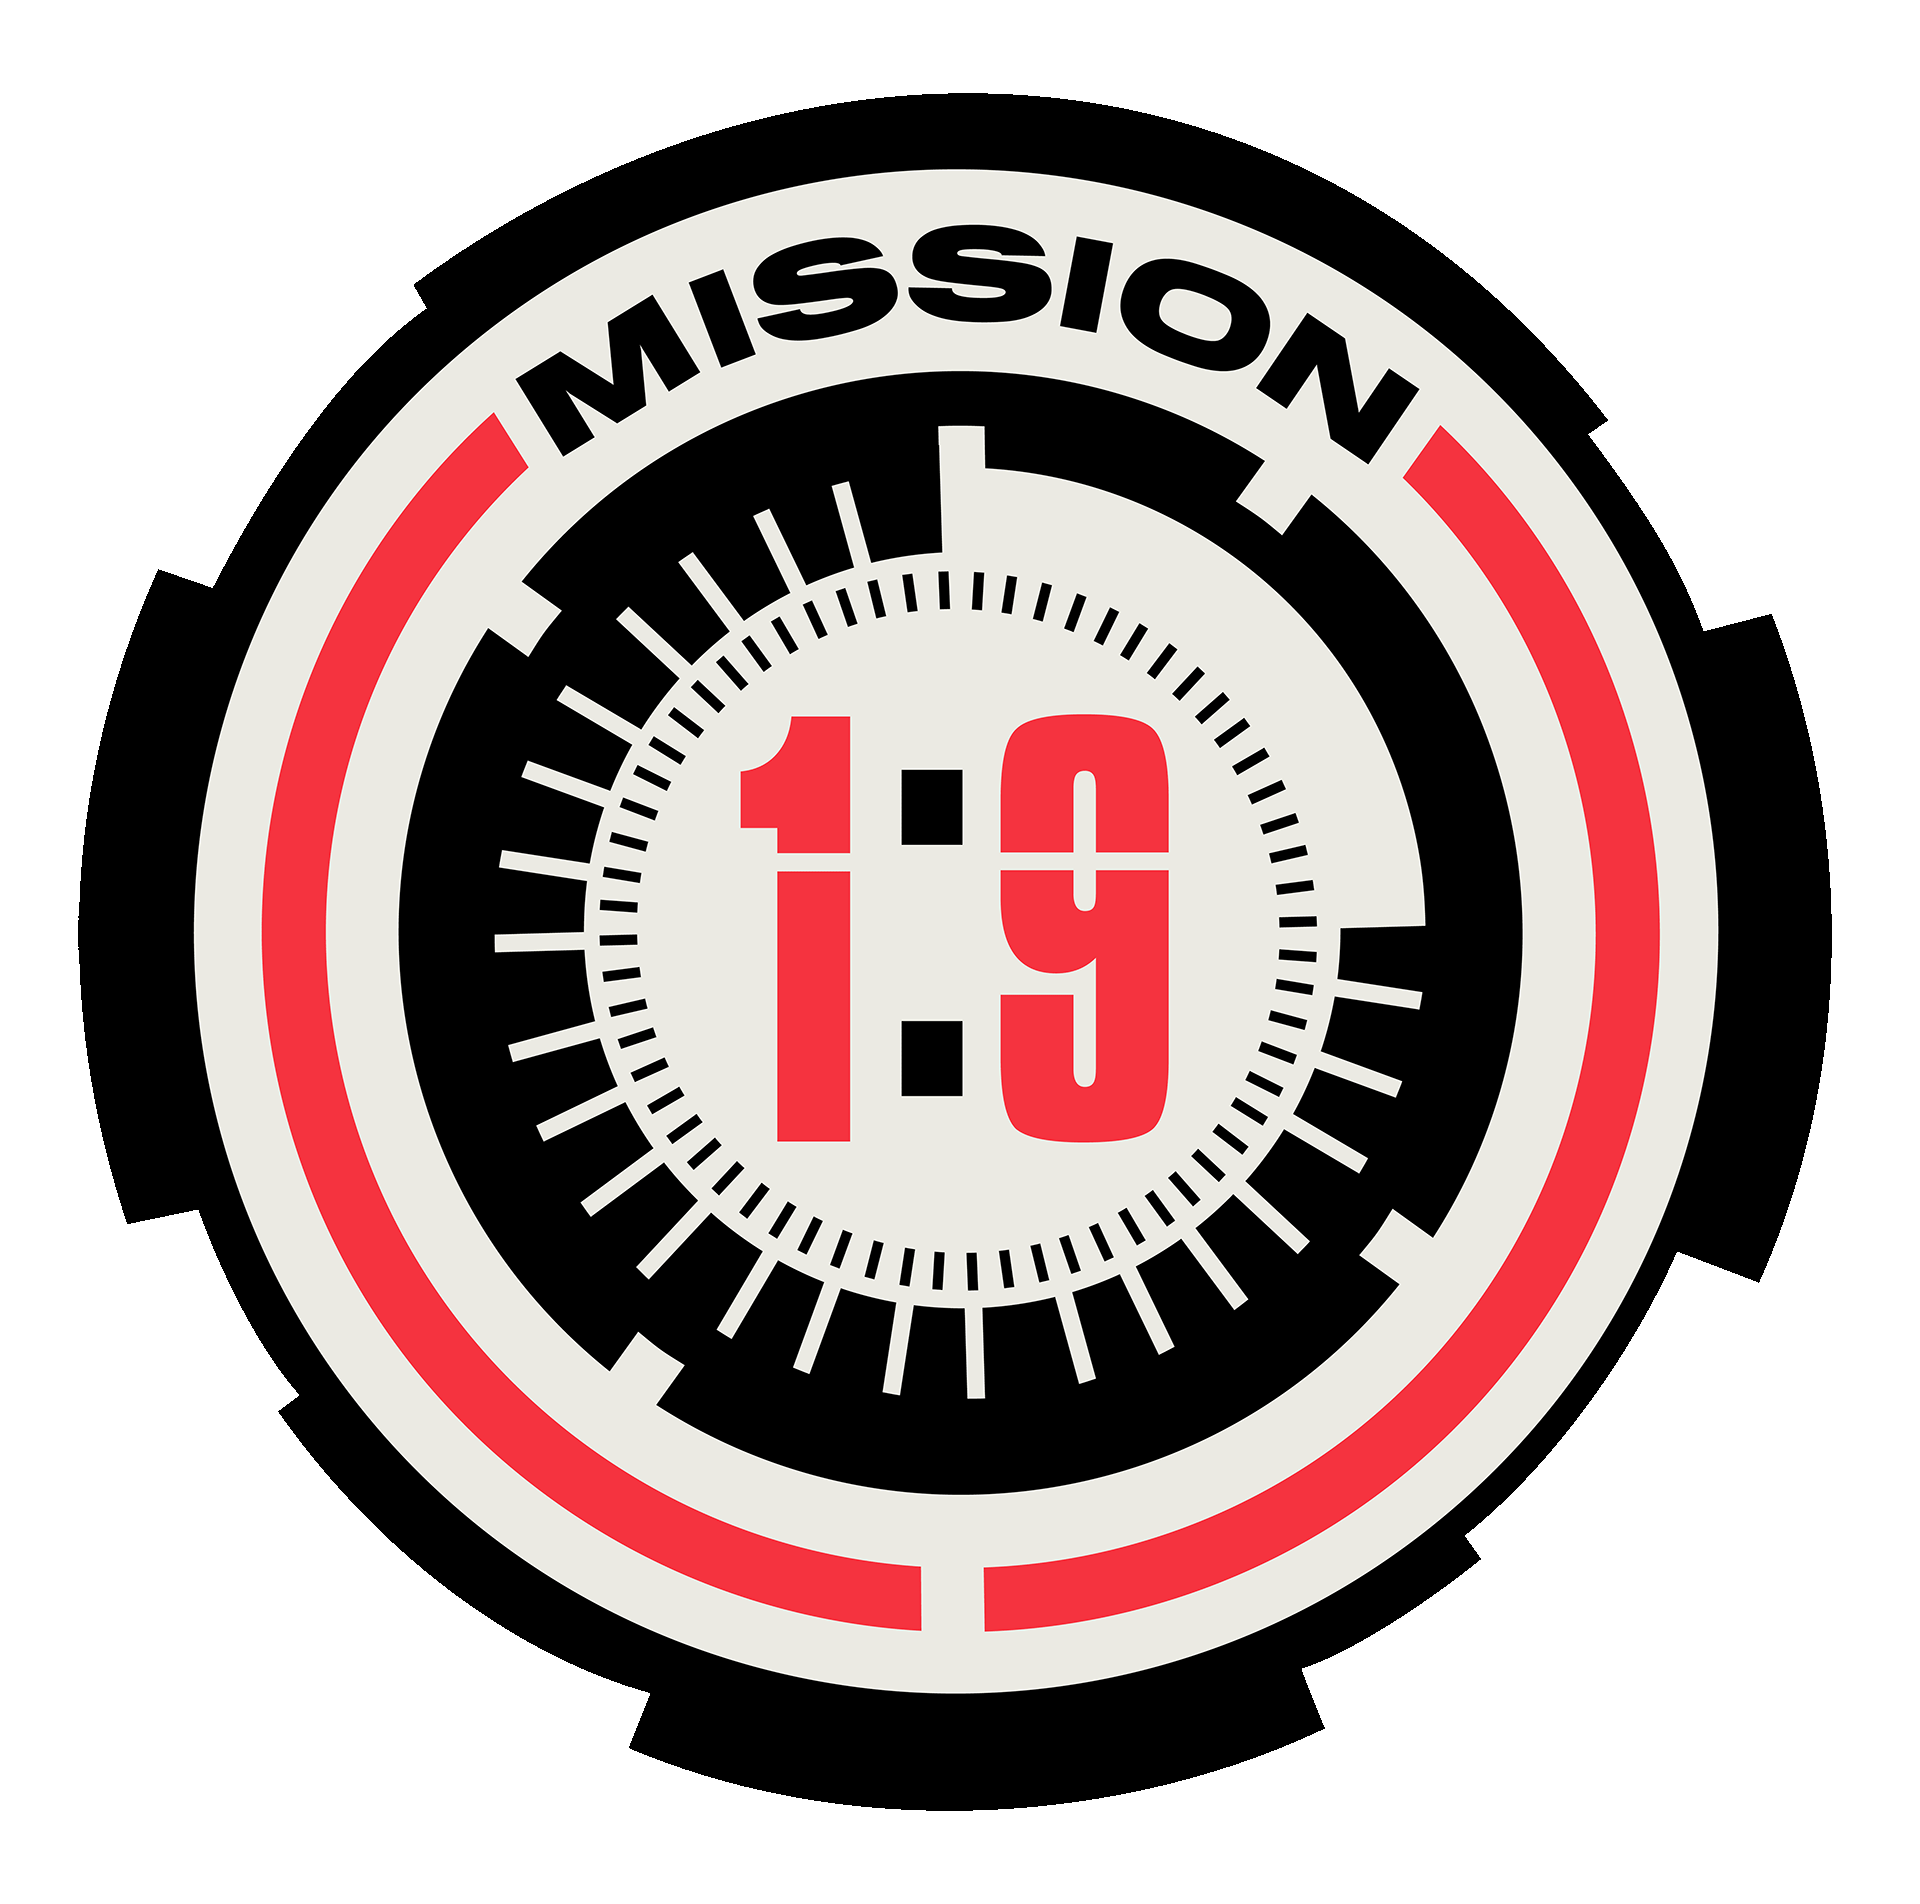 Mission 1:9